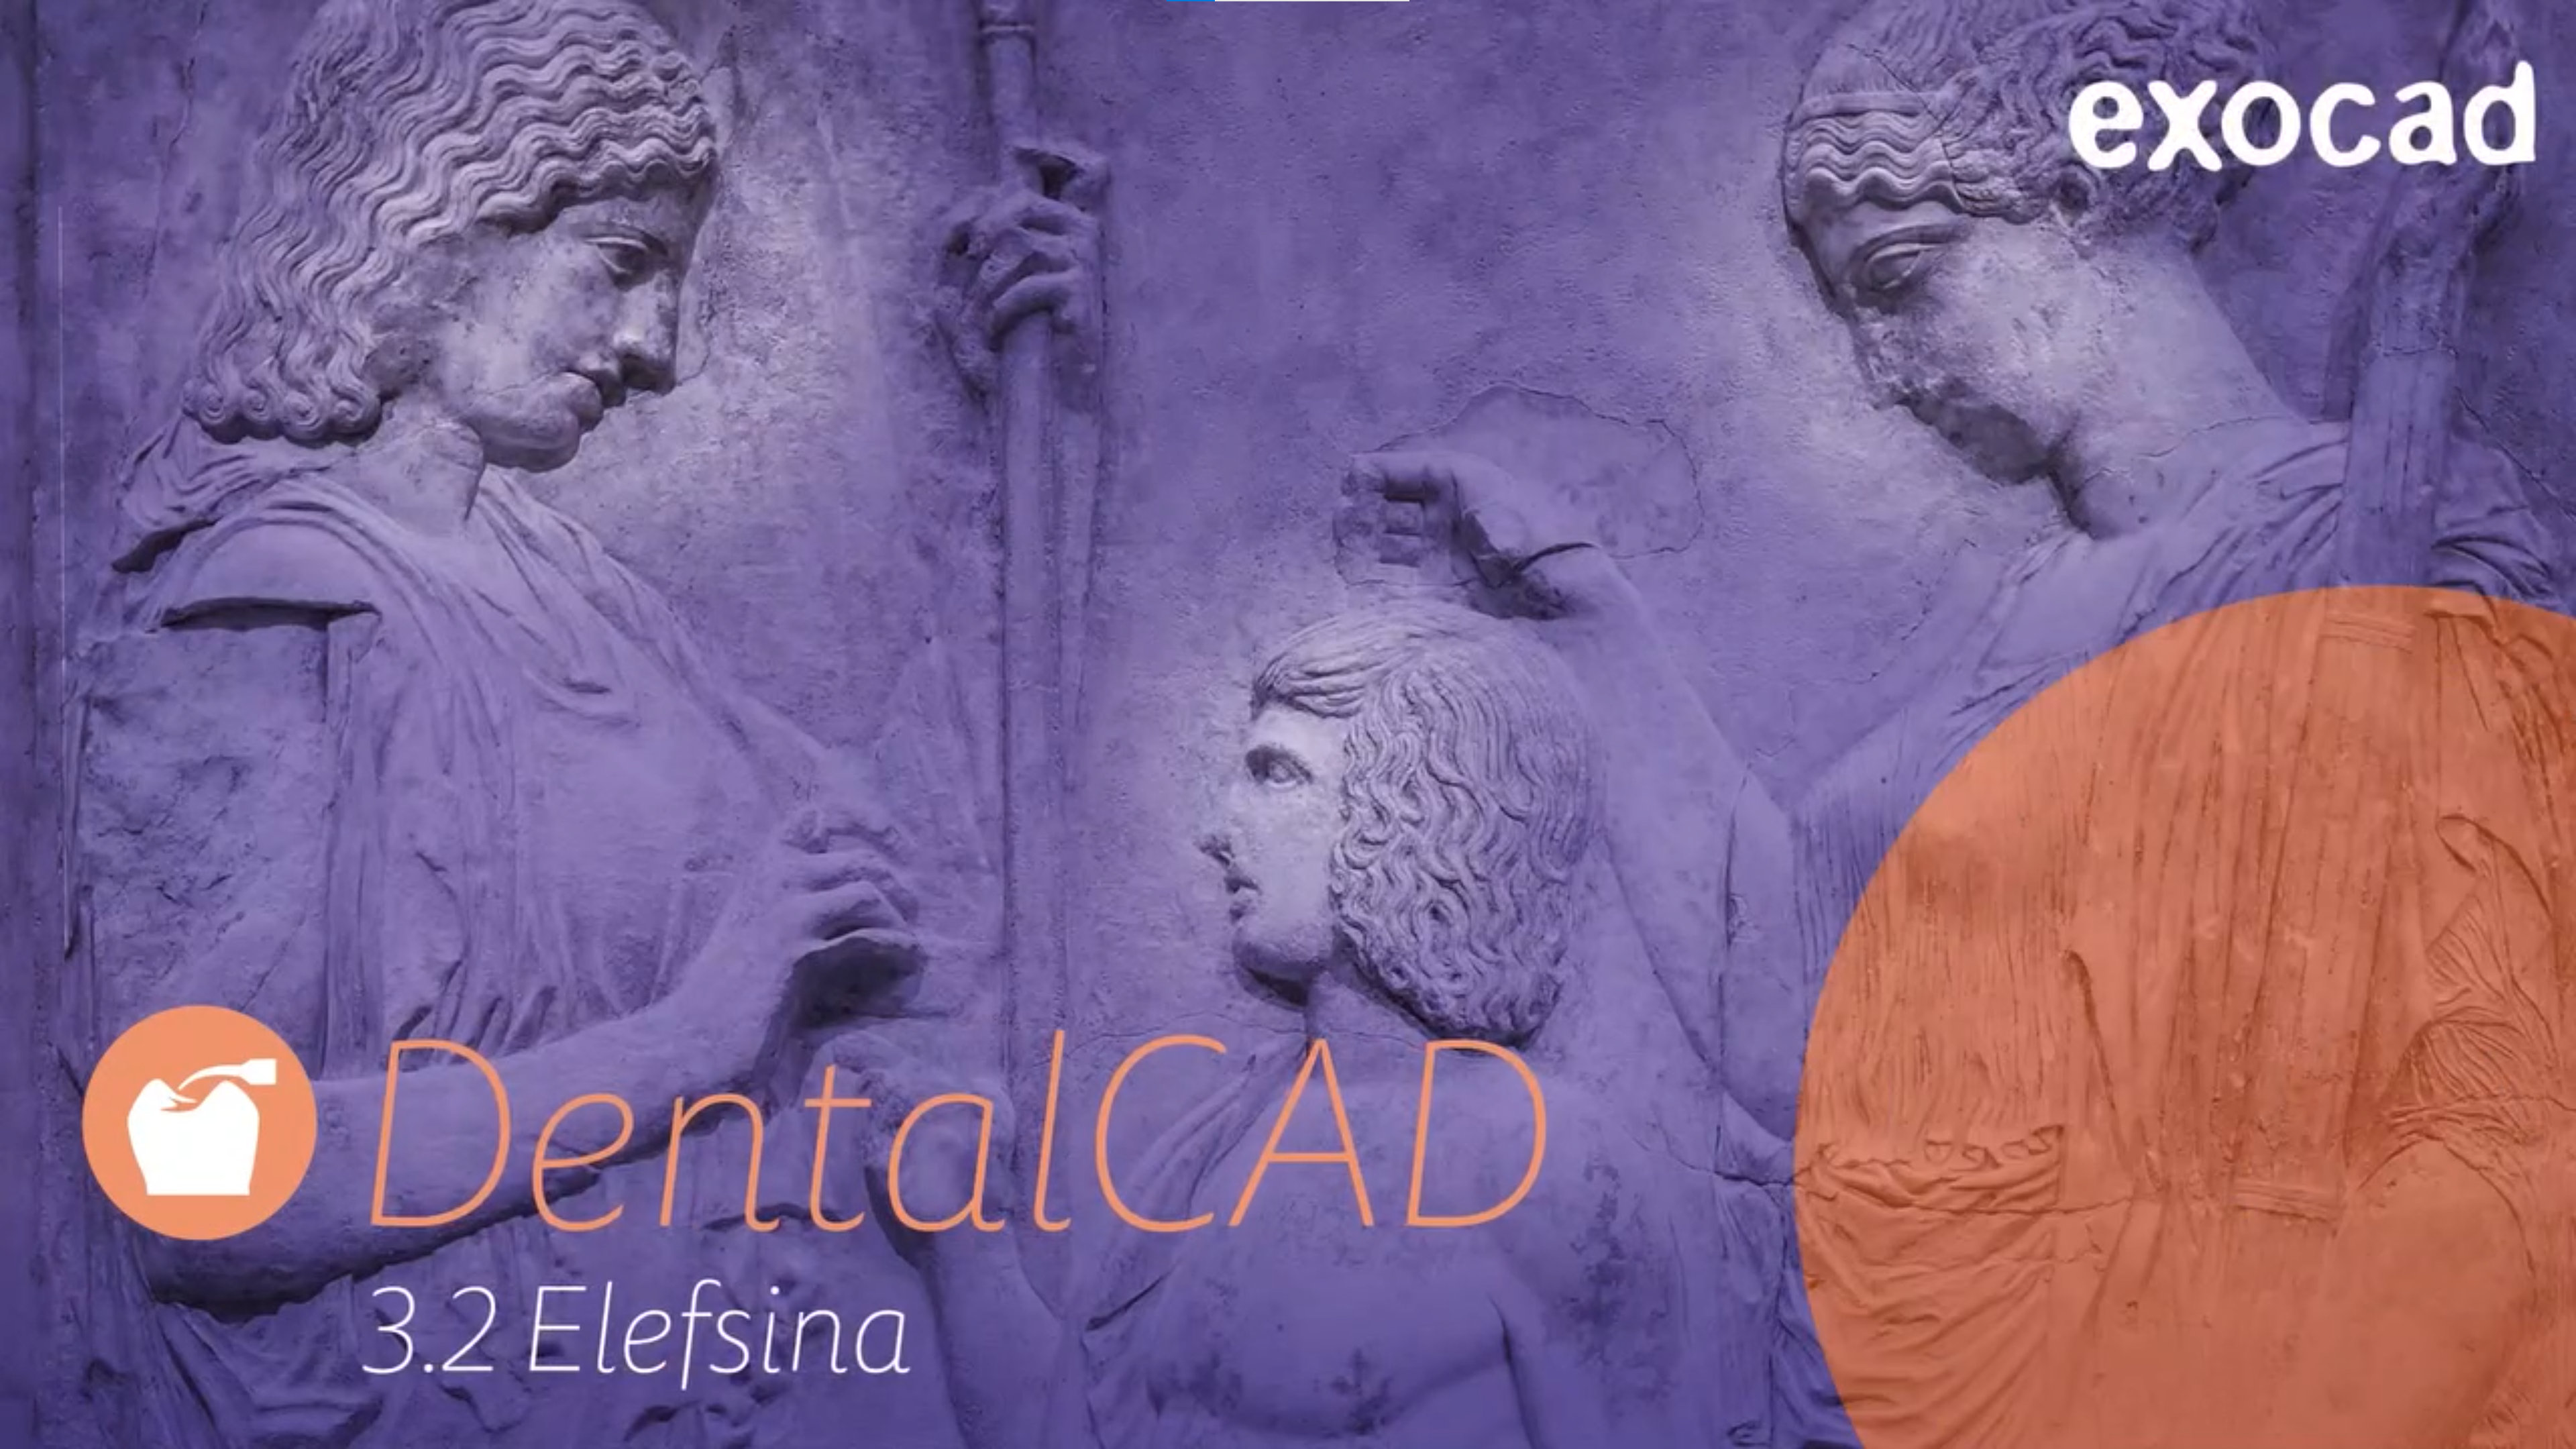 Με πάνω από 60 νέα χαρακτηριστικά το Exocad DentalCAD 3.2 Elefsina, είναι διαθέσιμο τώρα!